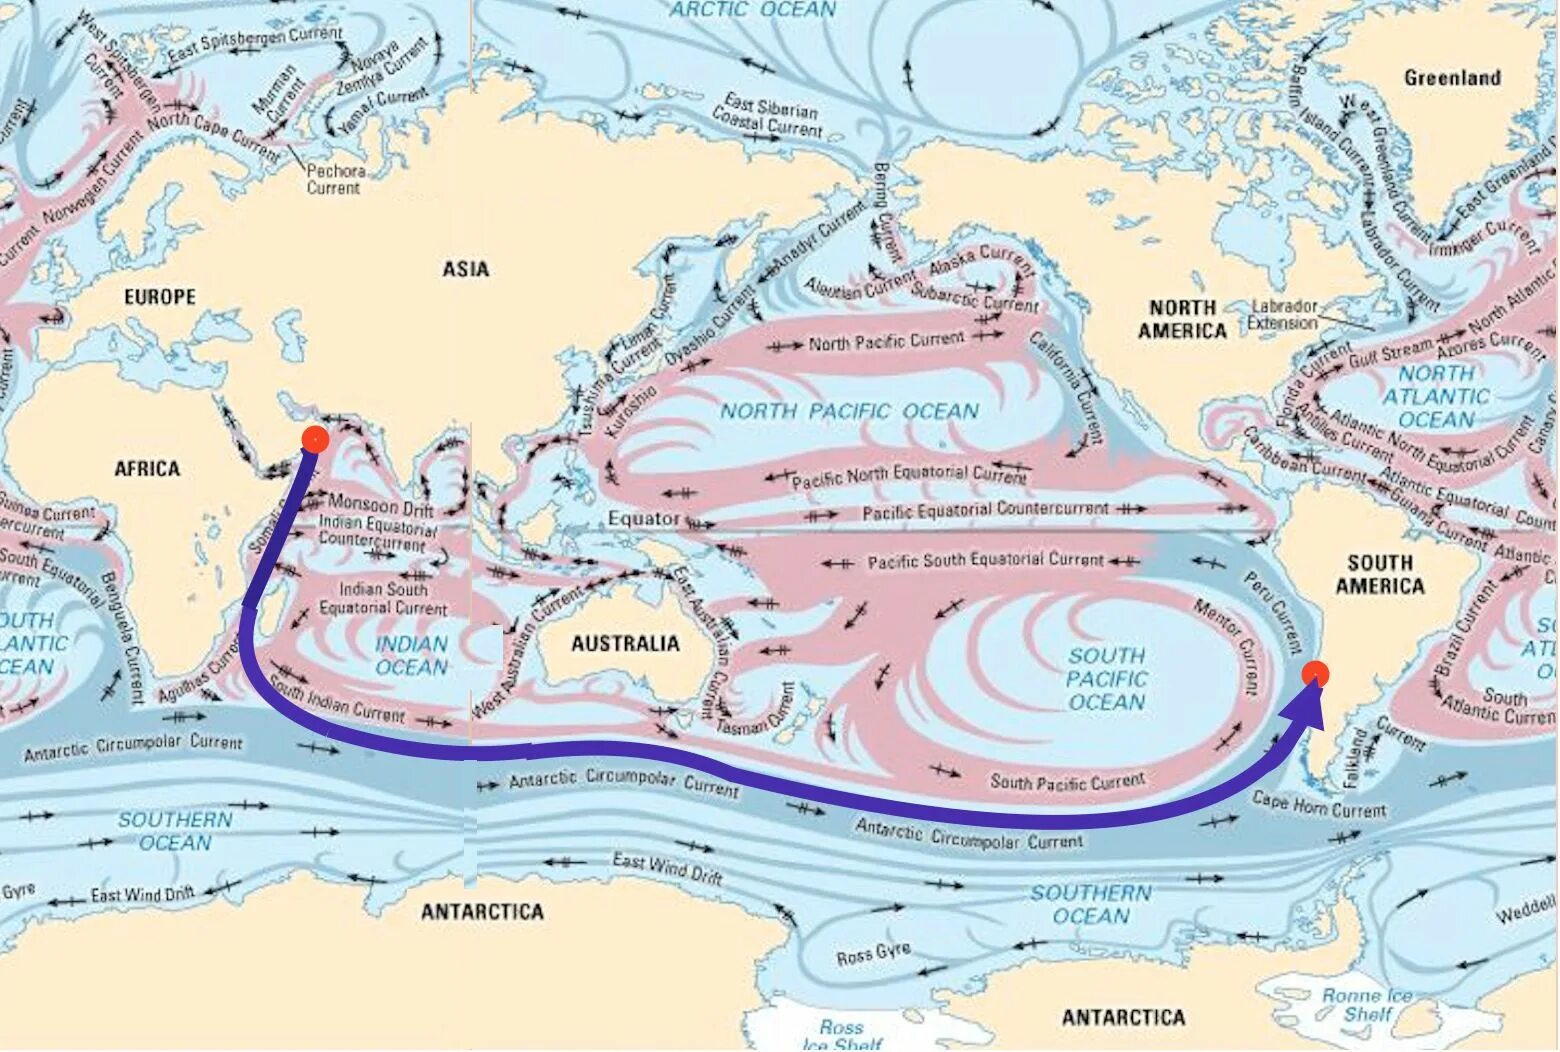 Морское течение гольфстрим. Морские течения. Течение Гольфстрим на карте мирового океана. Холодные морские течения. Карта морских течений.